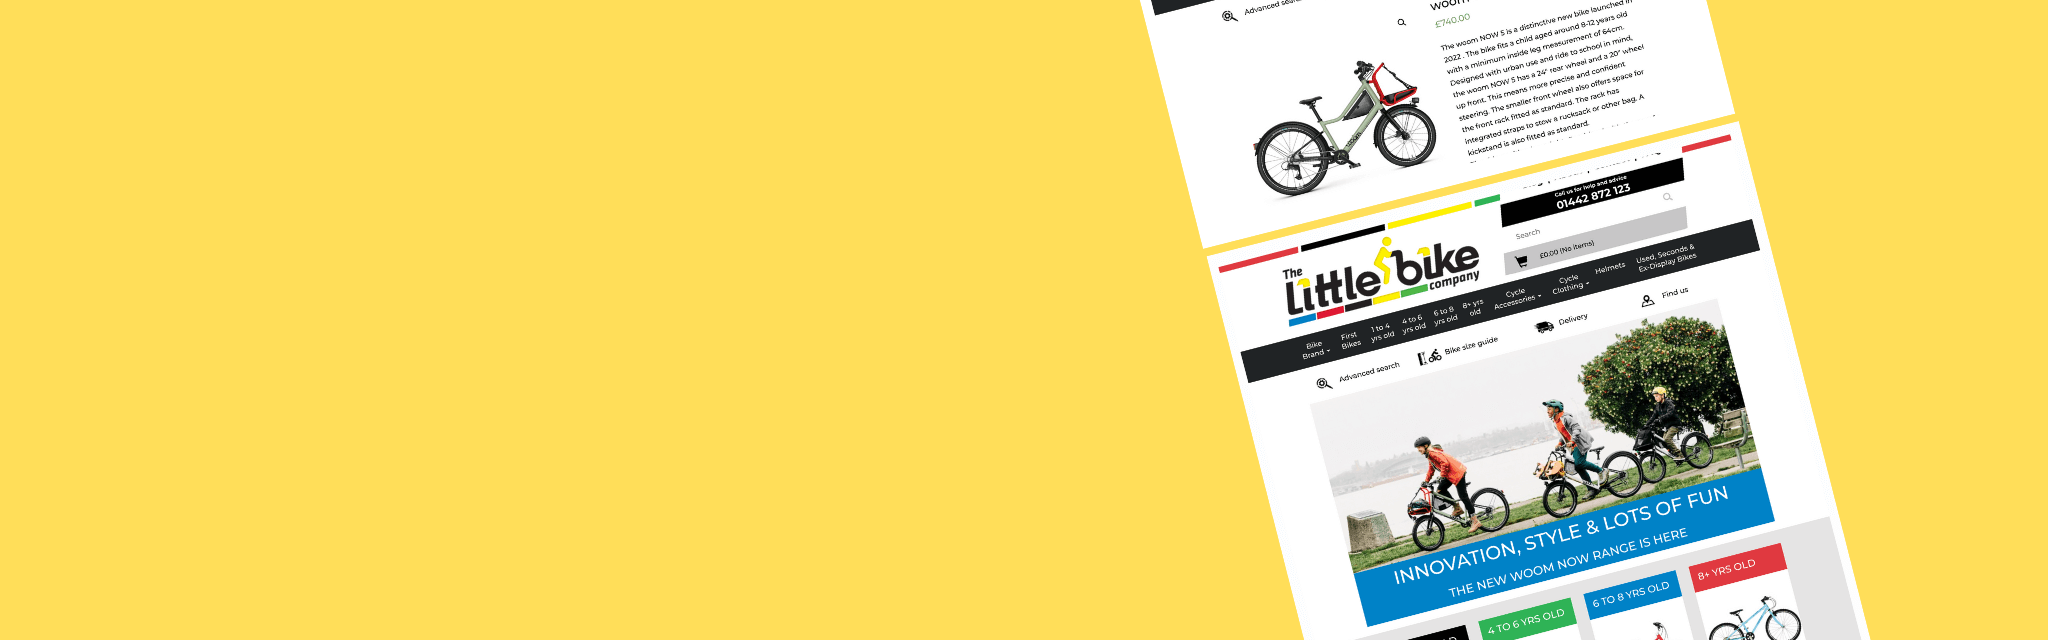 Screenshots from The Little Bike website